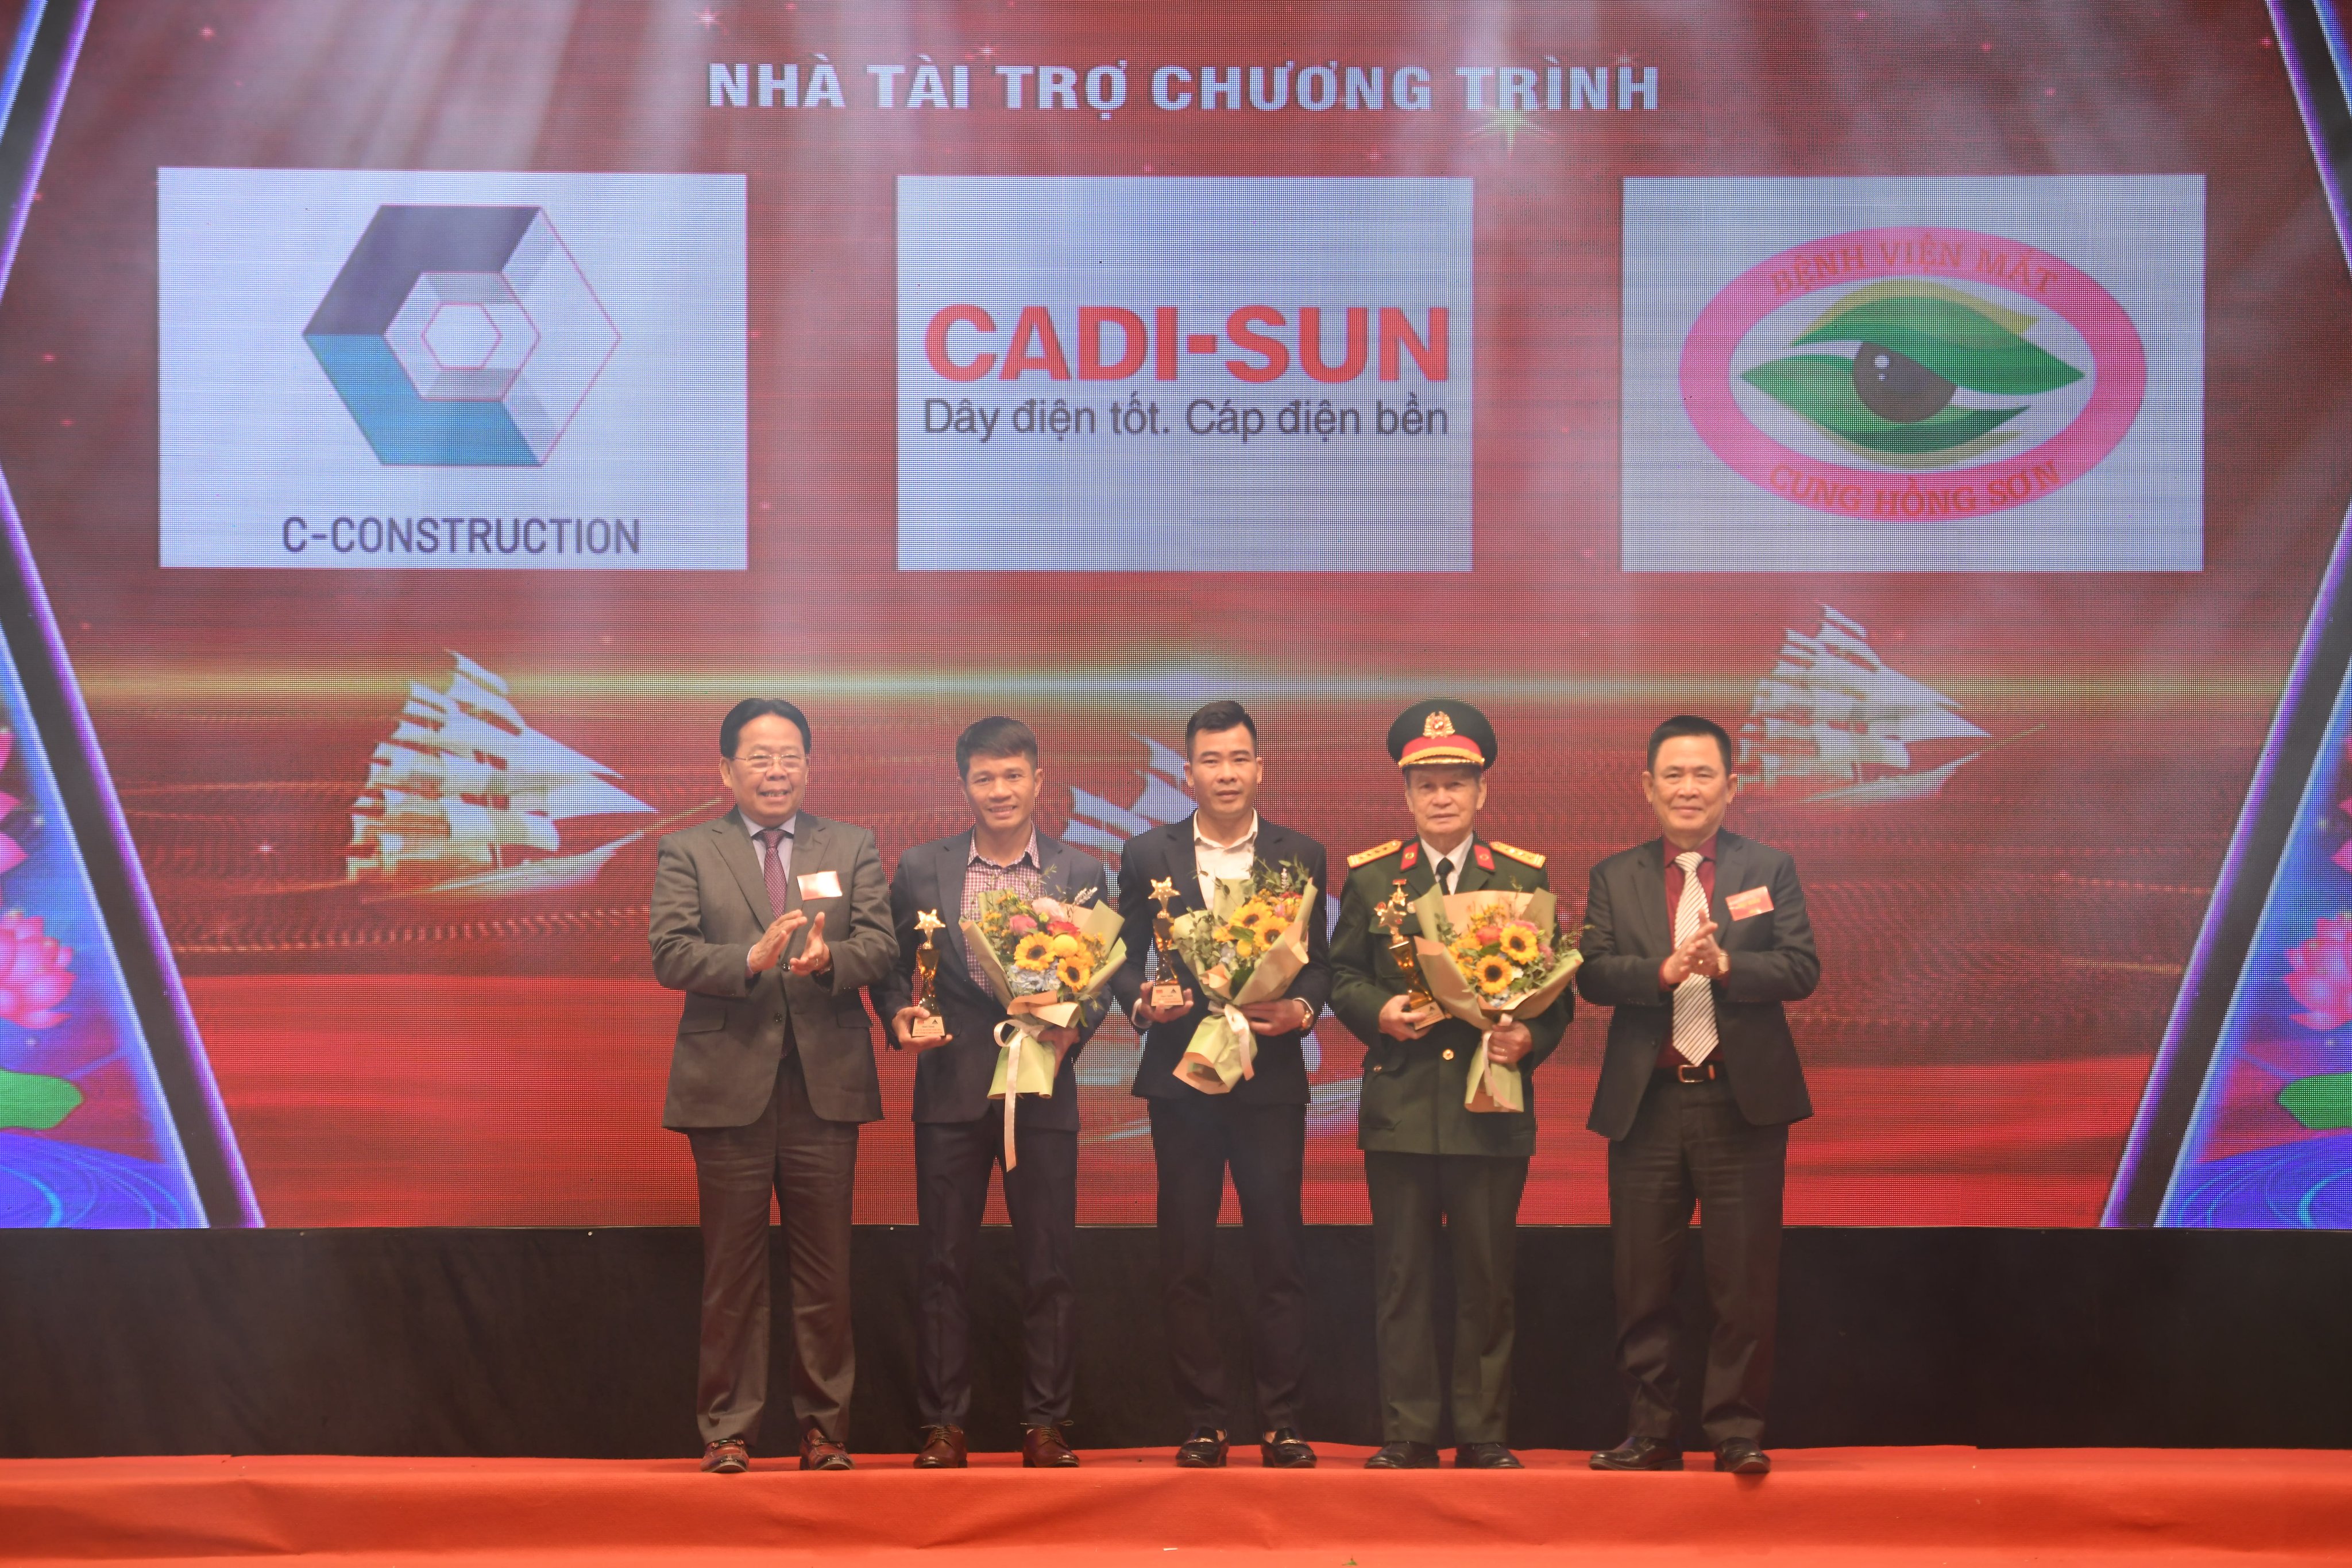 CADIS-SUN, “Top 10 sản phẩm chất lượng tốt được người Việt tin dùng 2022”